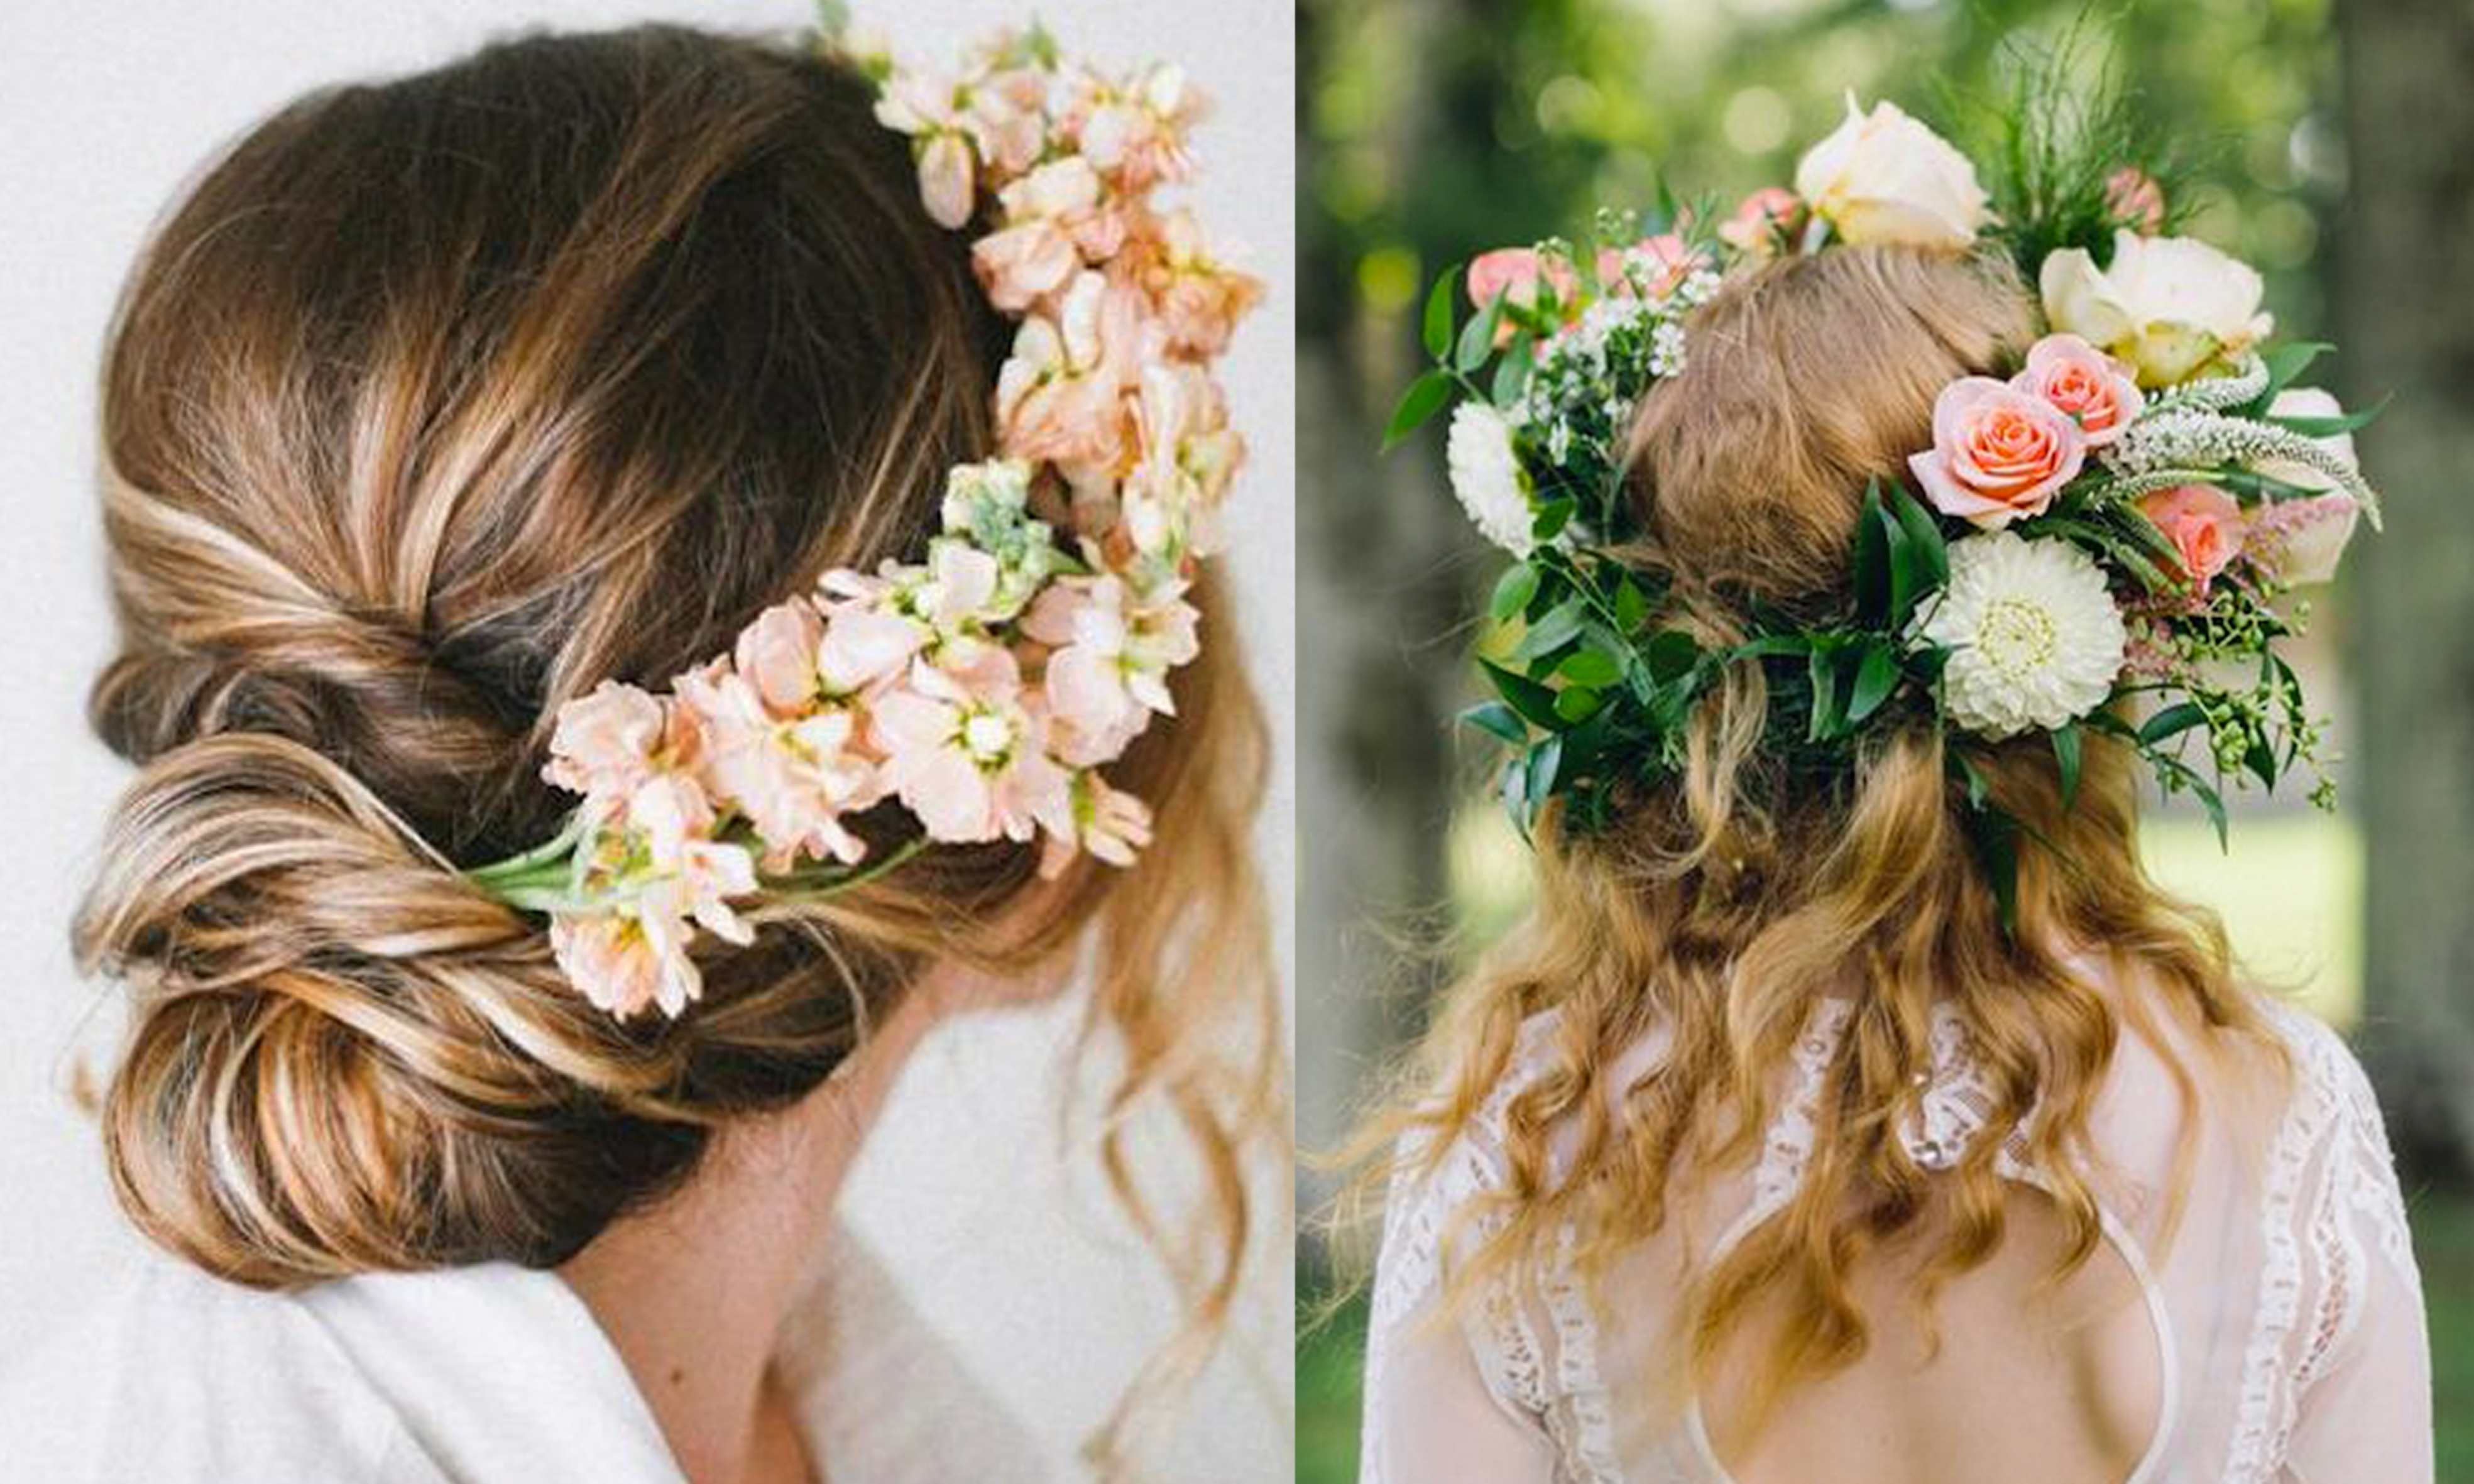 Hãy cùng Marry cập nhật xu hướng tóc cưới mới và thời thượng nhất trong mùa Xuân Hè 2017 cùng những vương miện hoa tươi độc đáo!